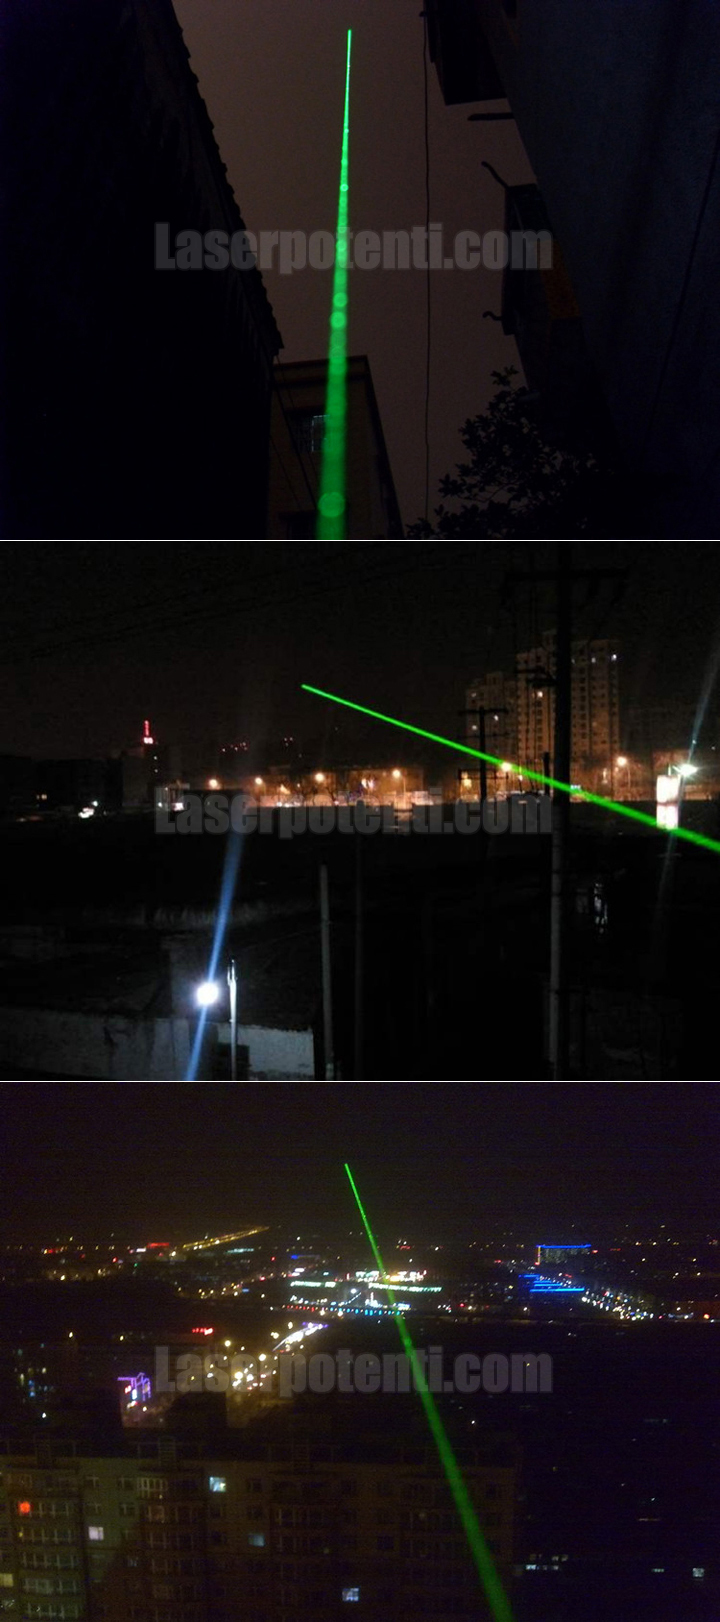 puntatore laser 300mW